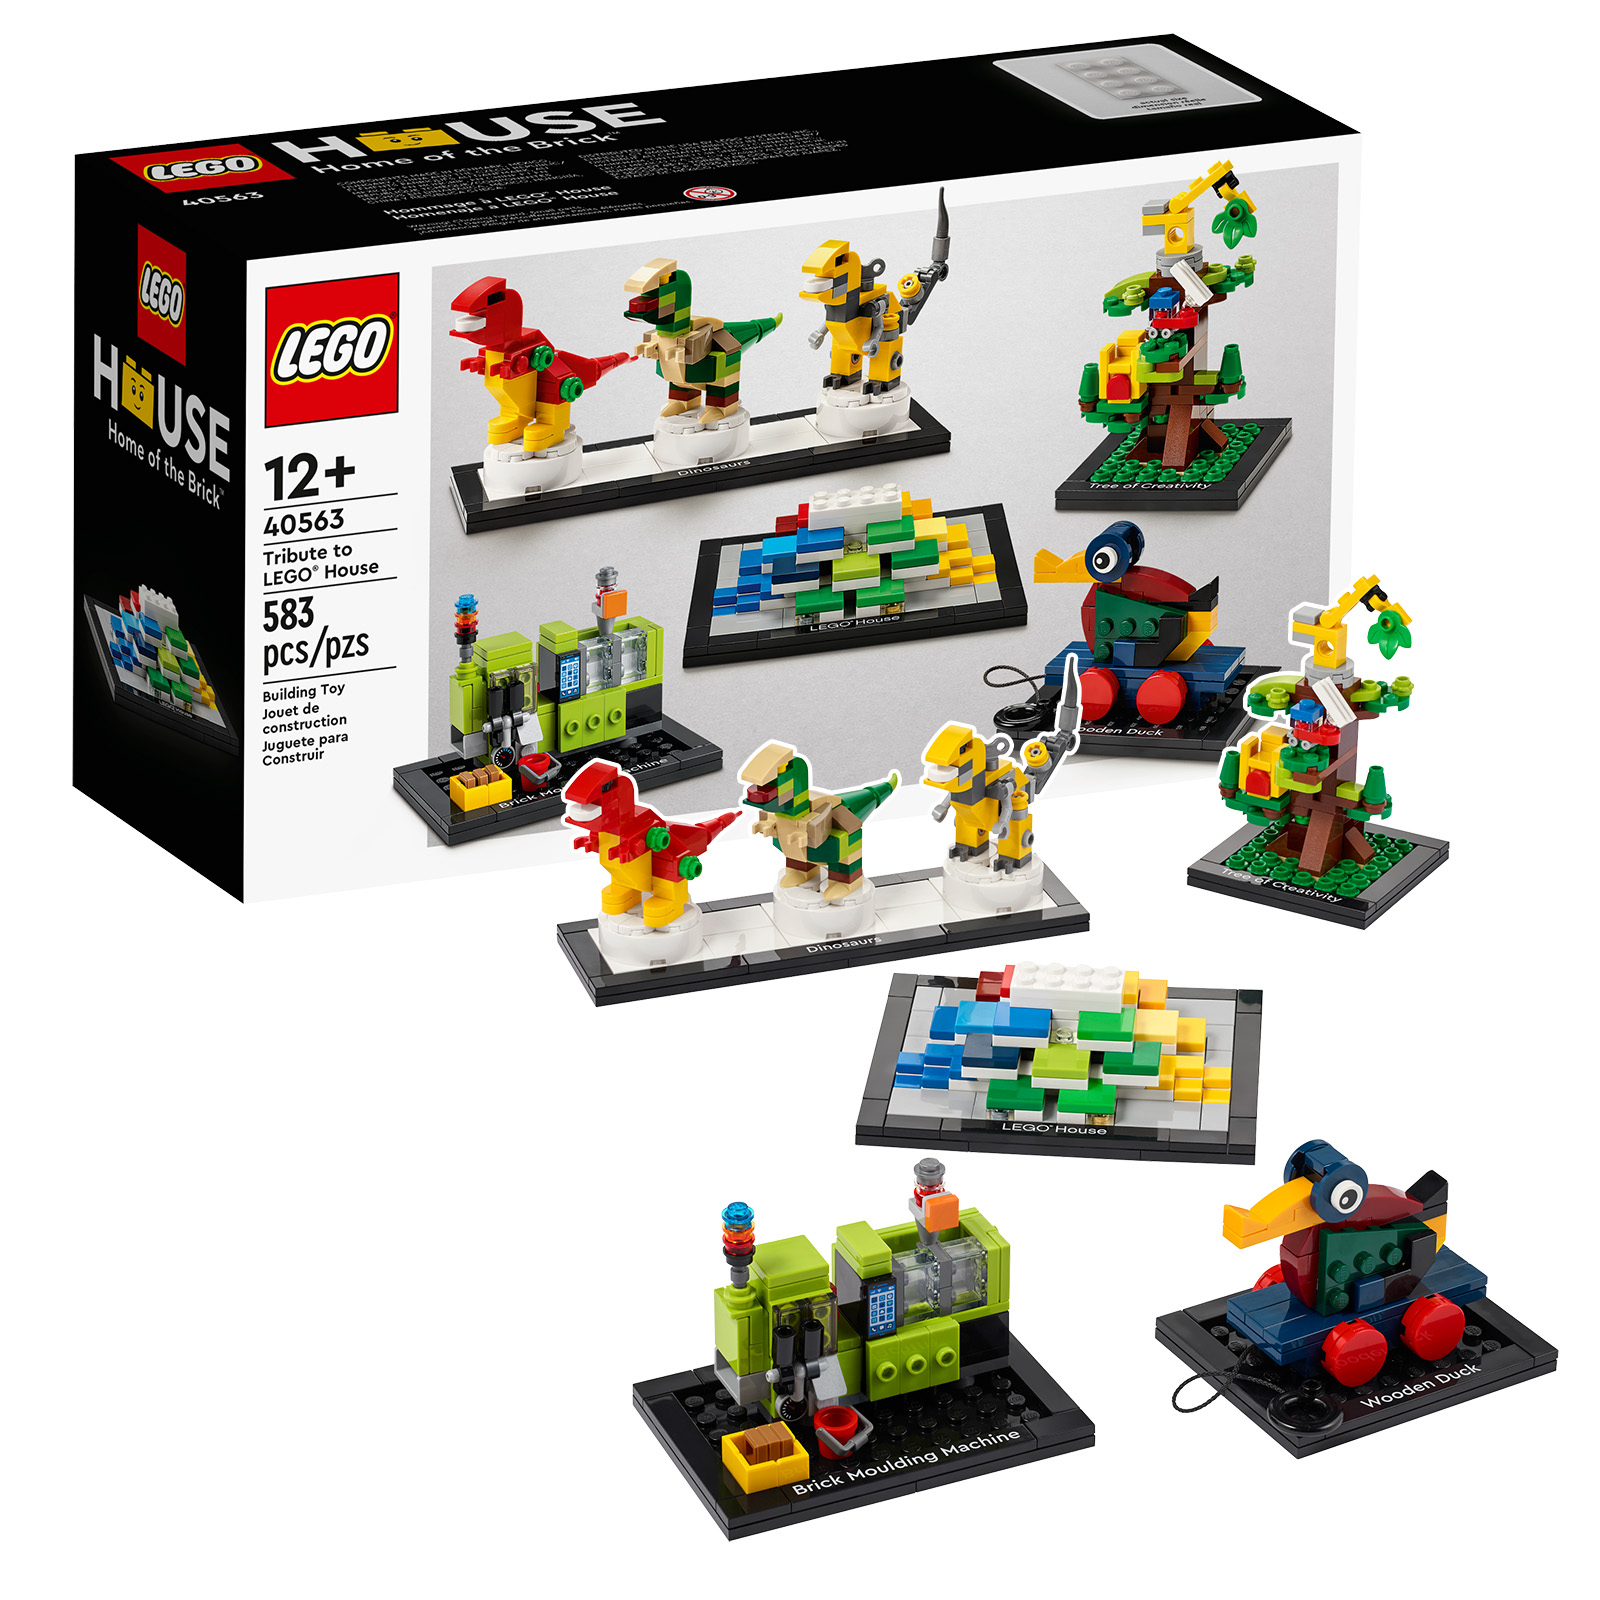 Rappel : dernières heures pour obtenir un exemplaire du set LEGO 40563 Tribute to LEGO House